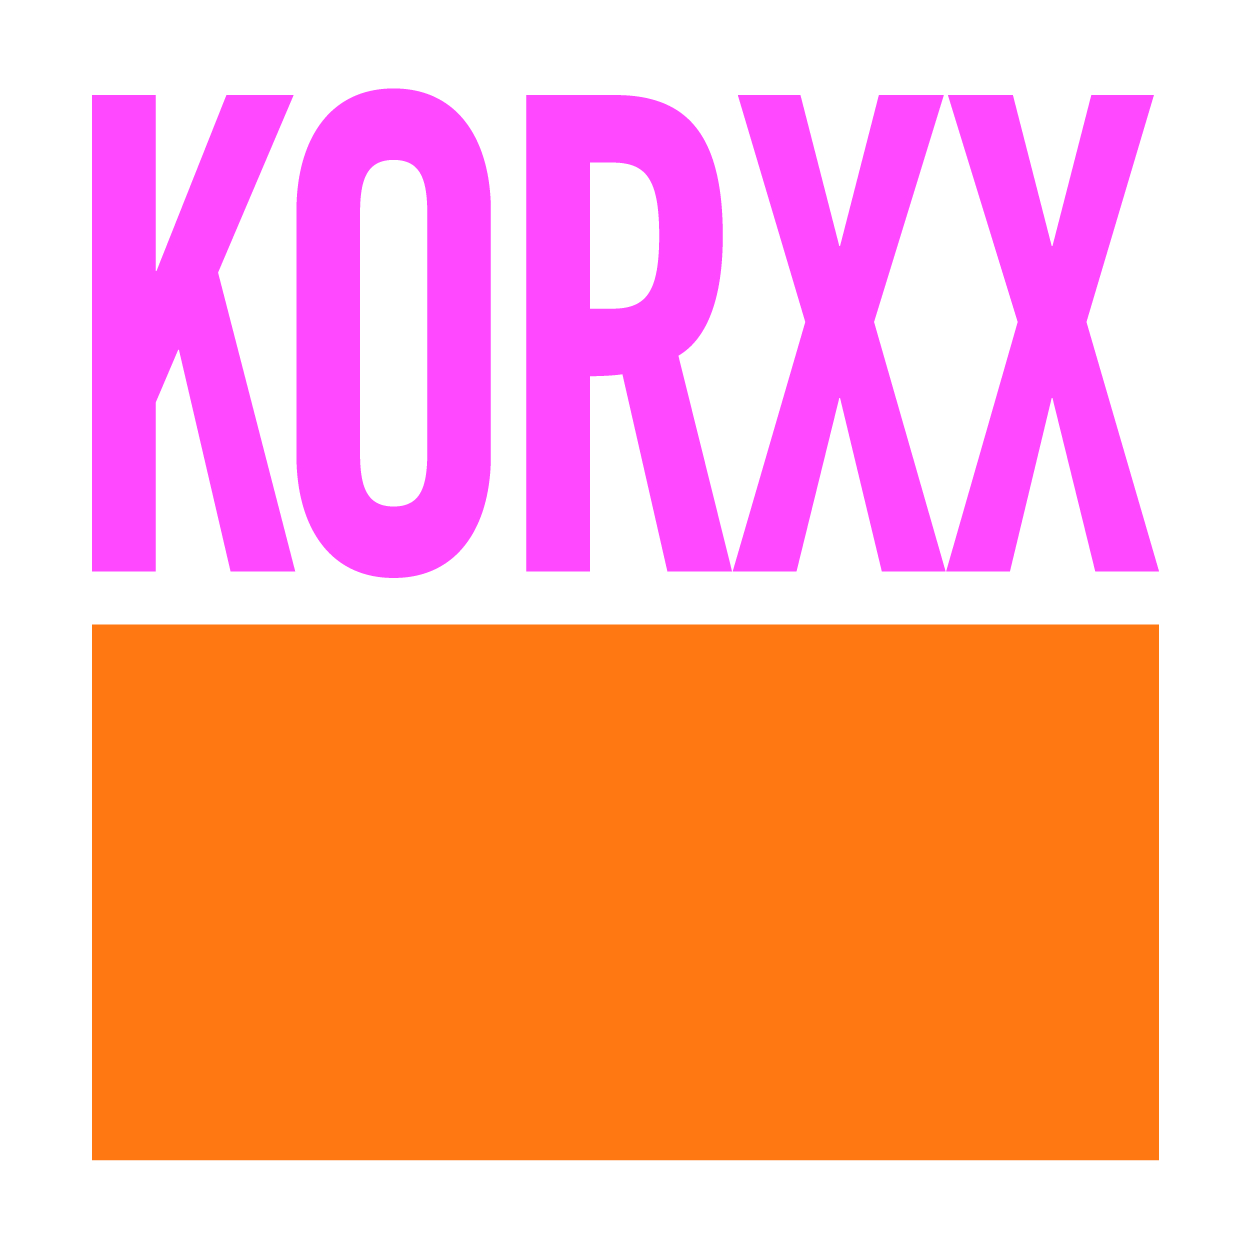 KORXX Cork Toys PLES GmbH